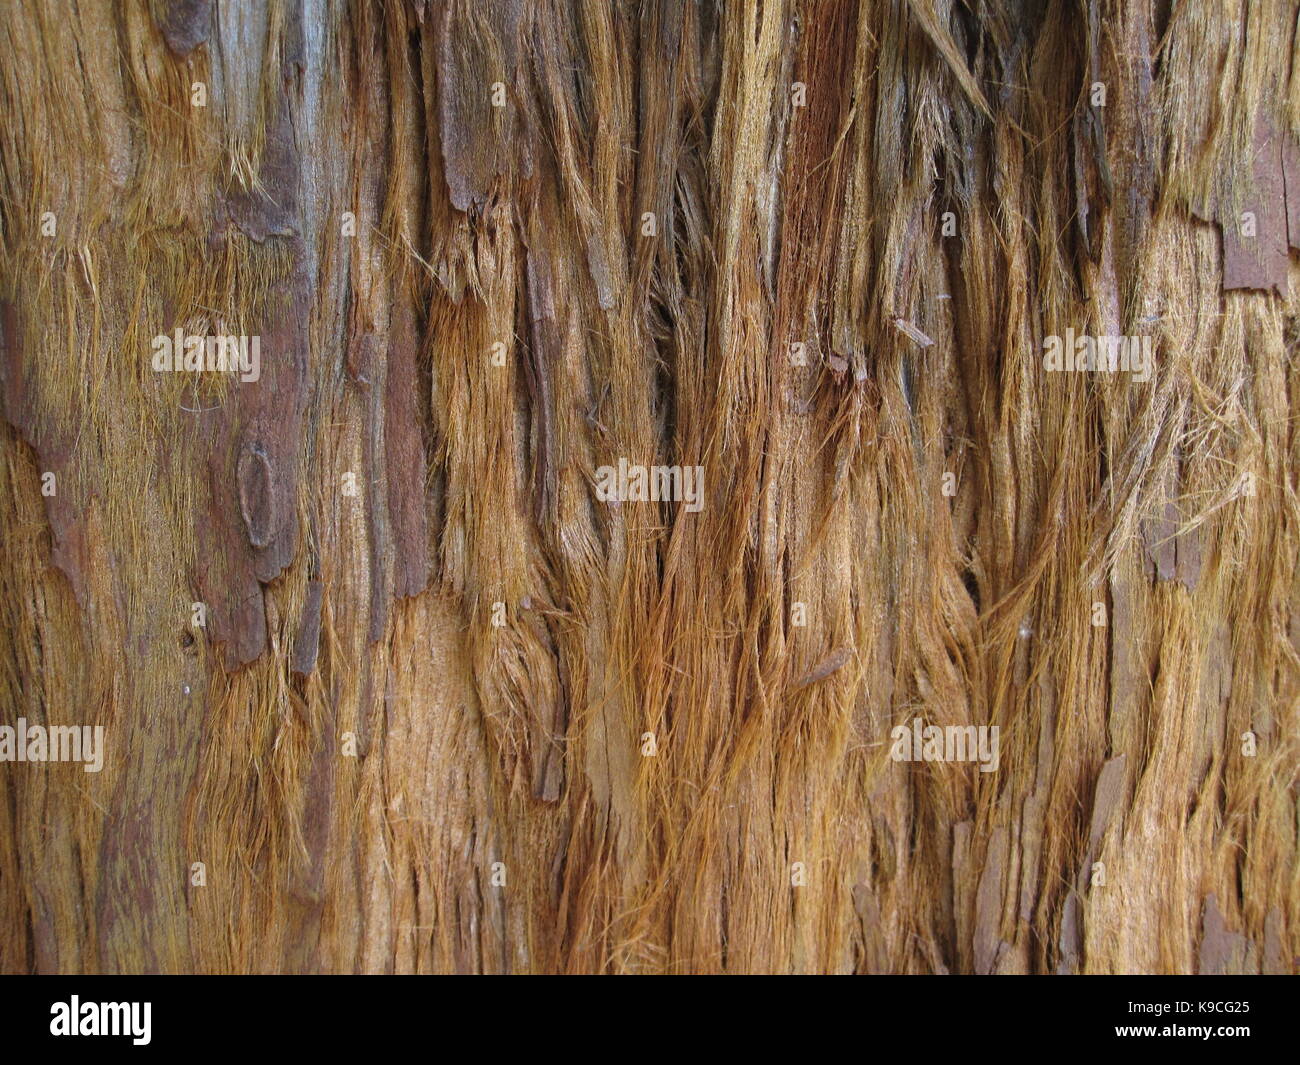 Casca de árvore com fibras, rústica Foto Stock